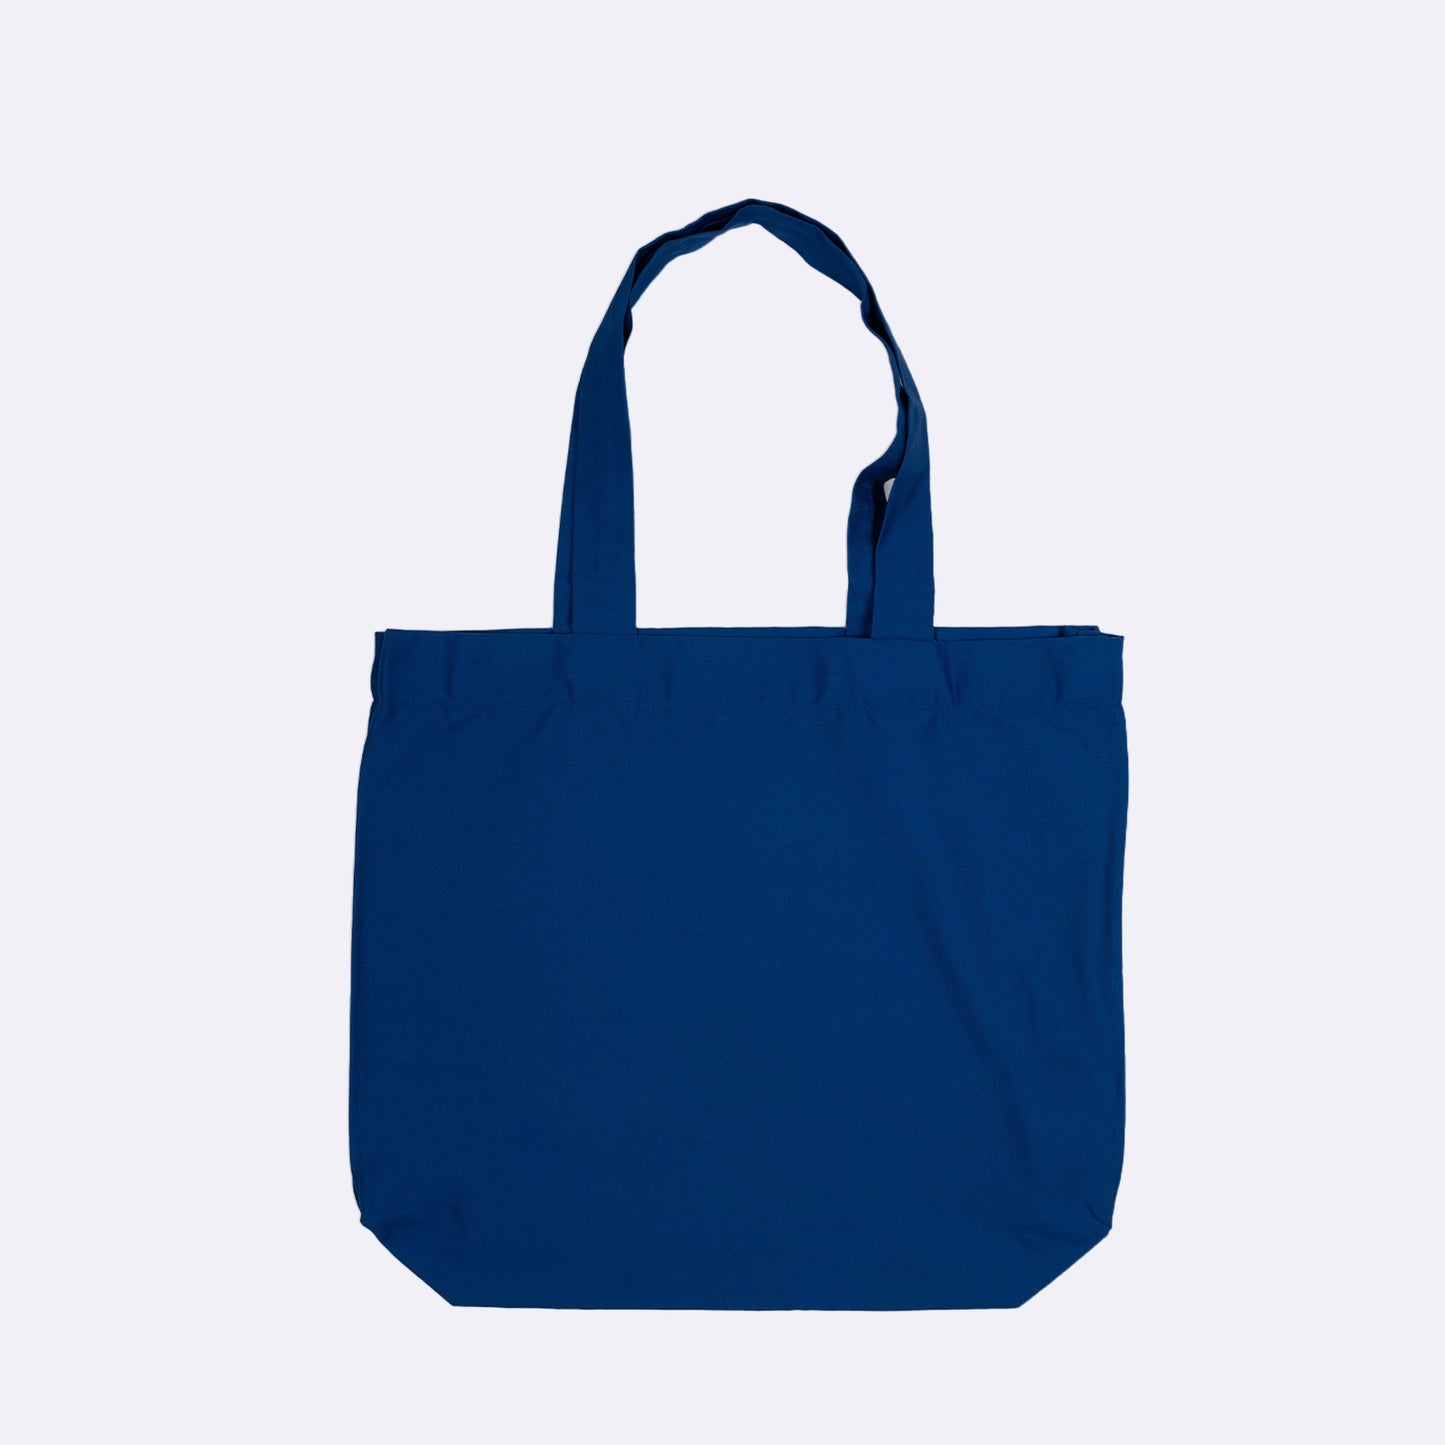 MGV15 Tote Bag Azul